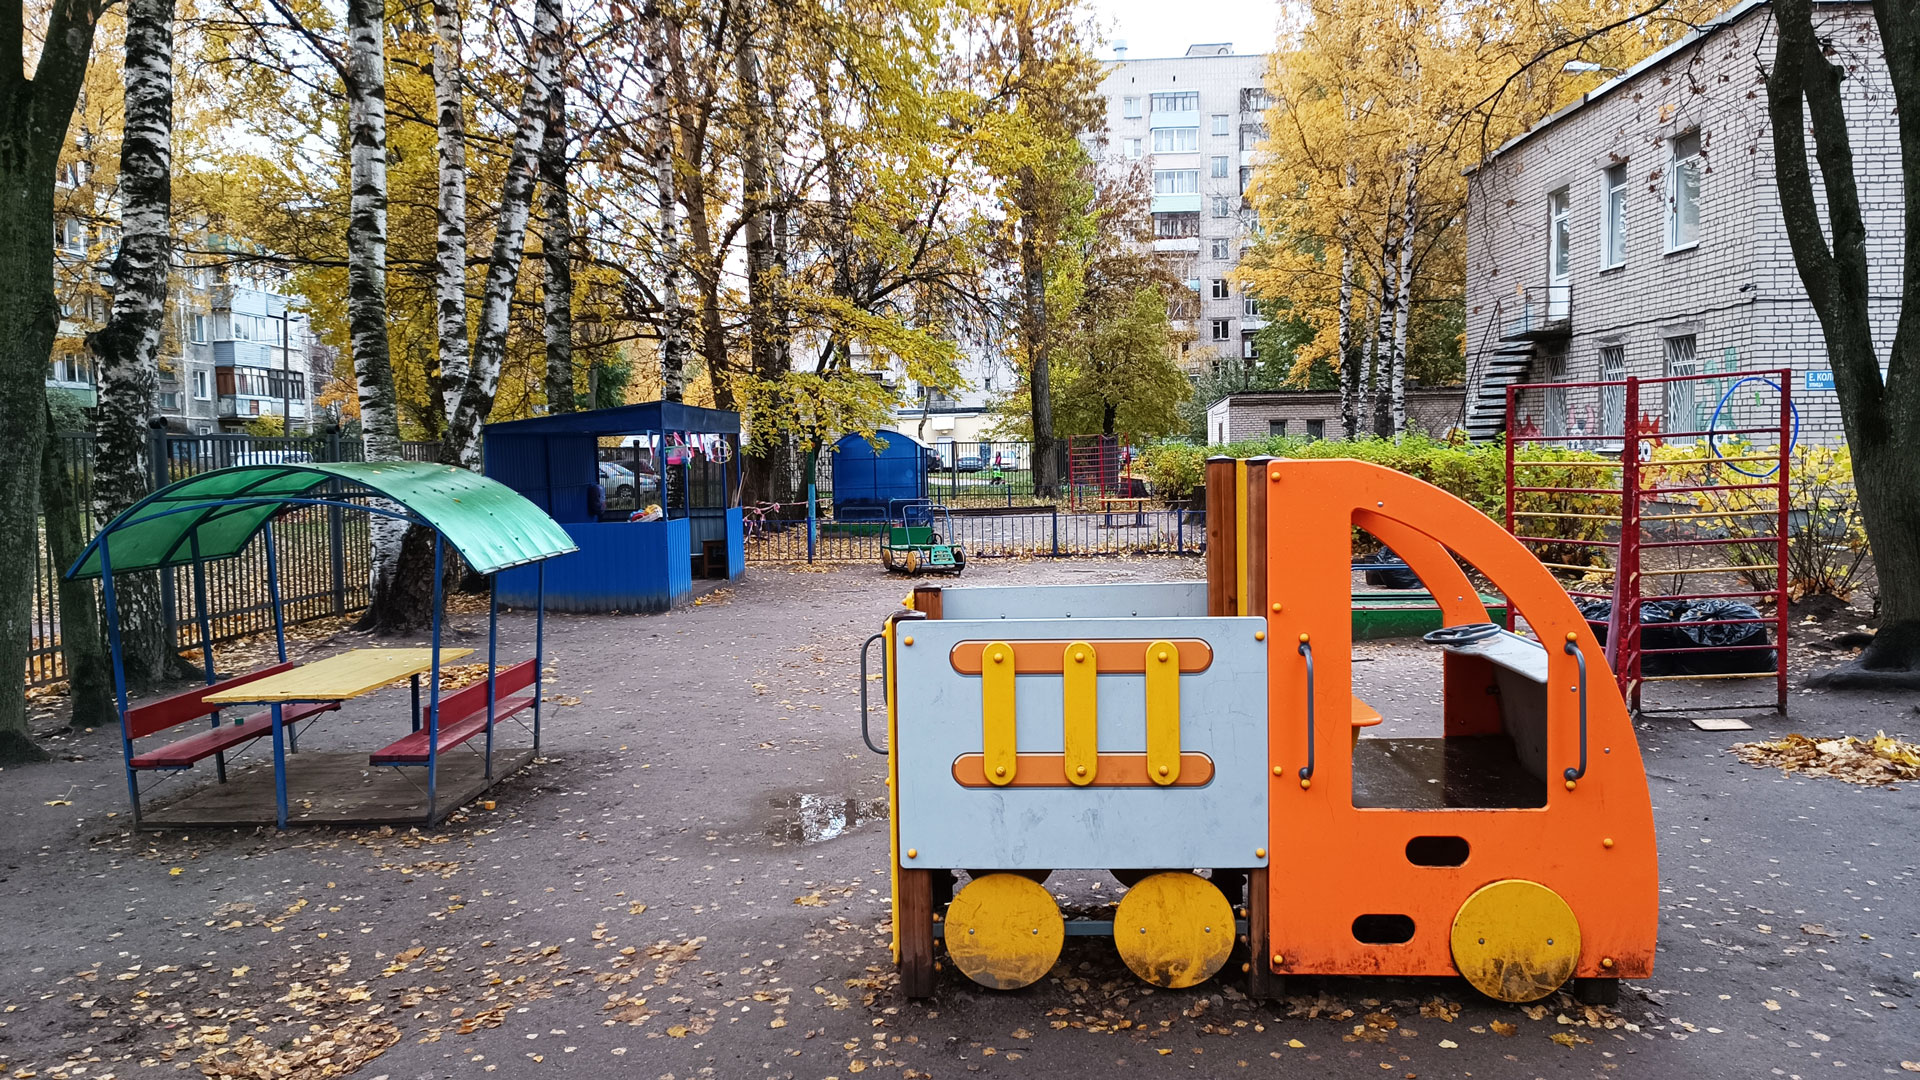 Детский сад 130 Ярославль: прогулочная площадка с беседкой и машинкой.